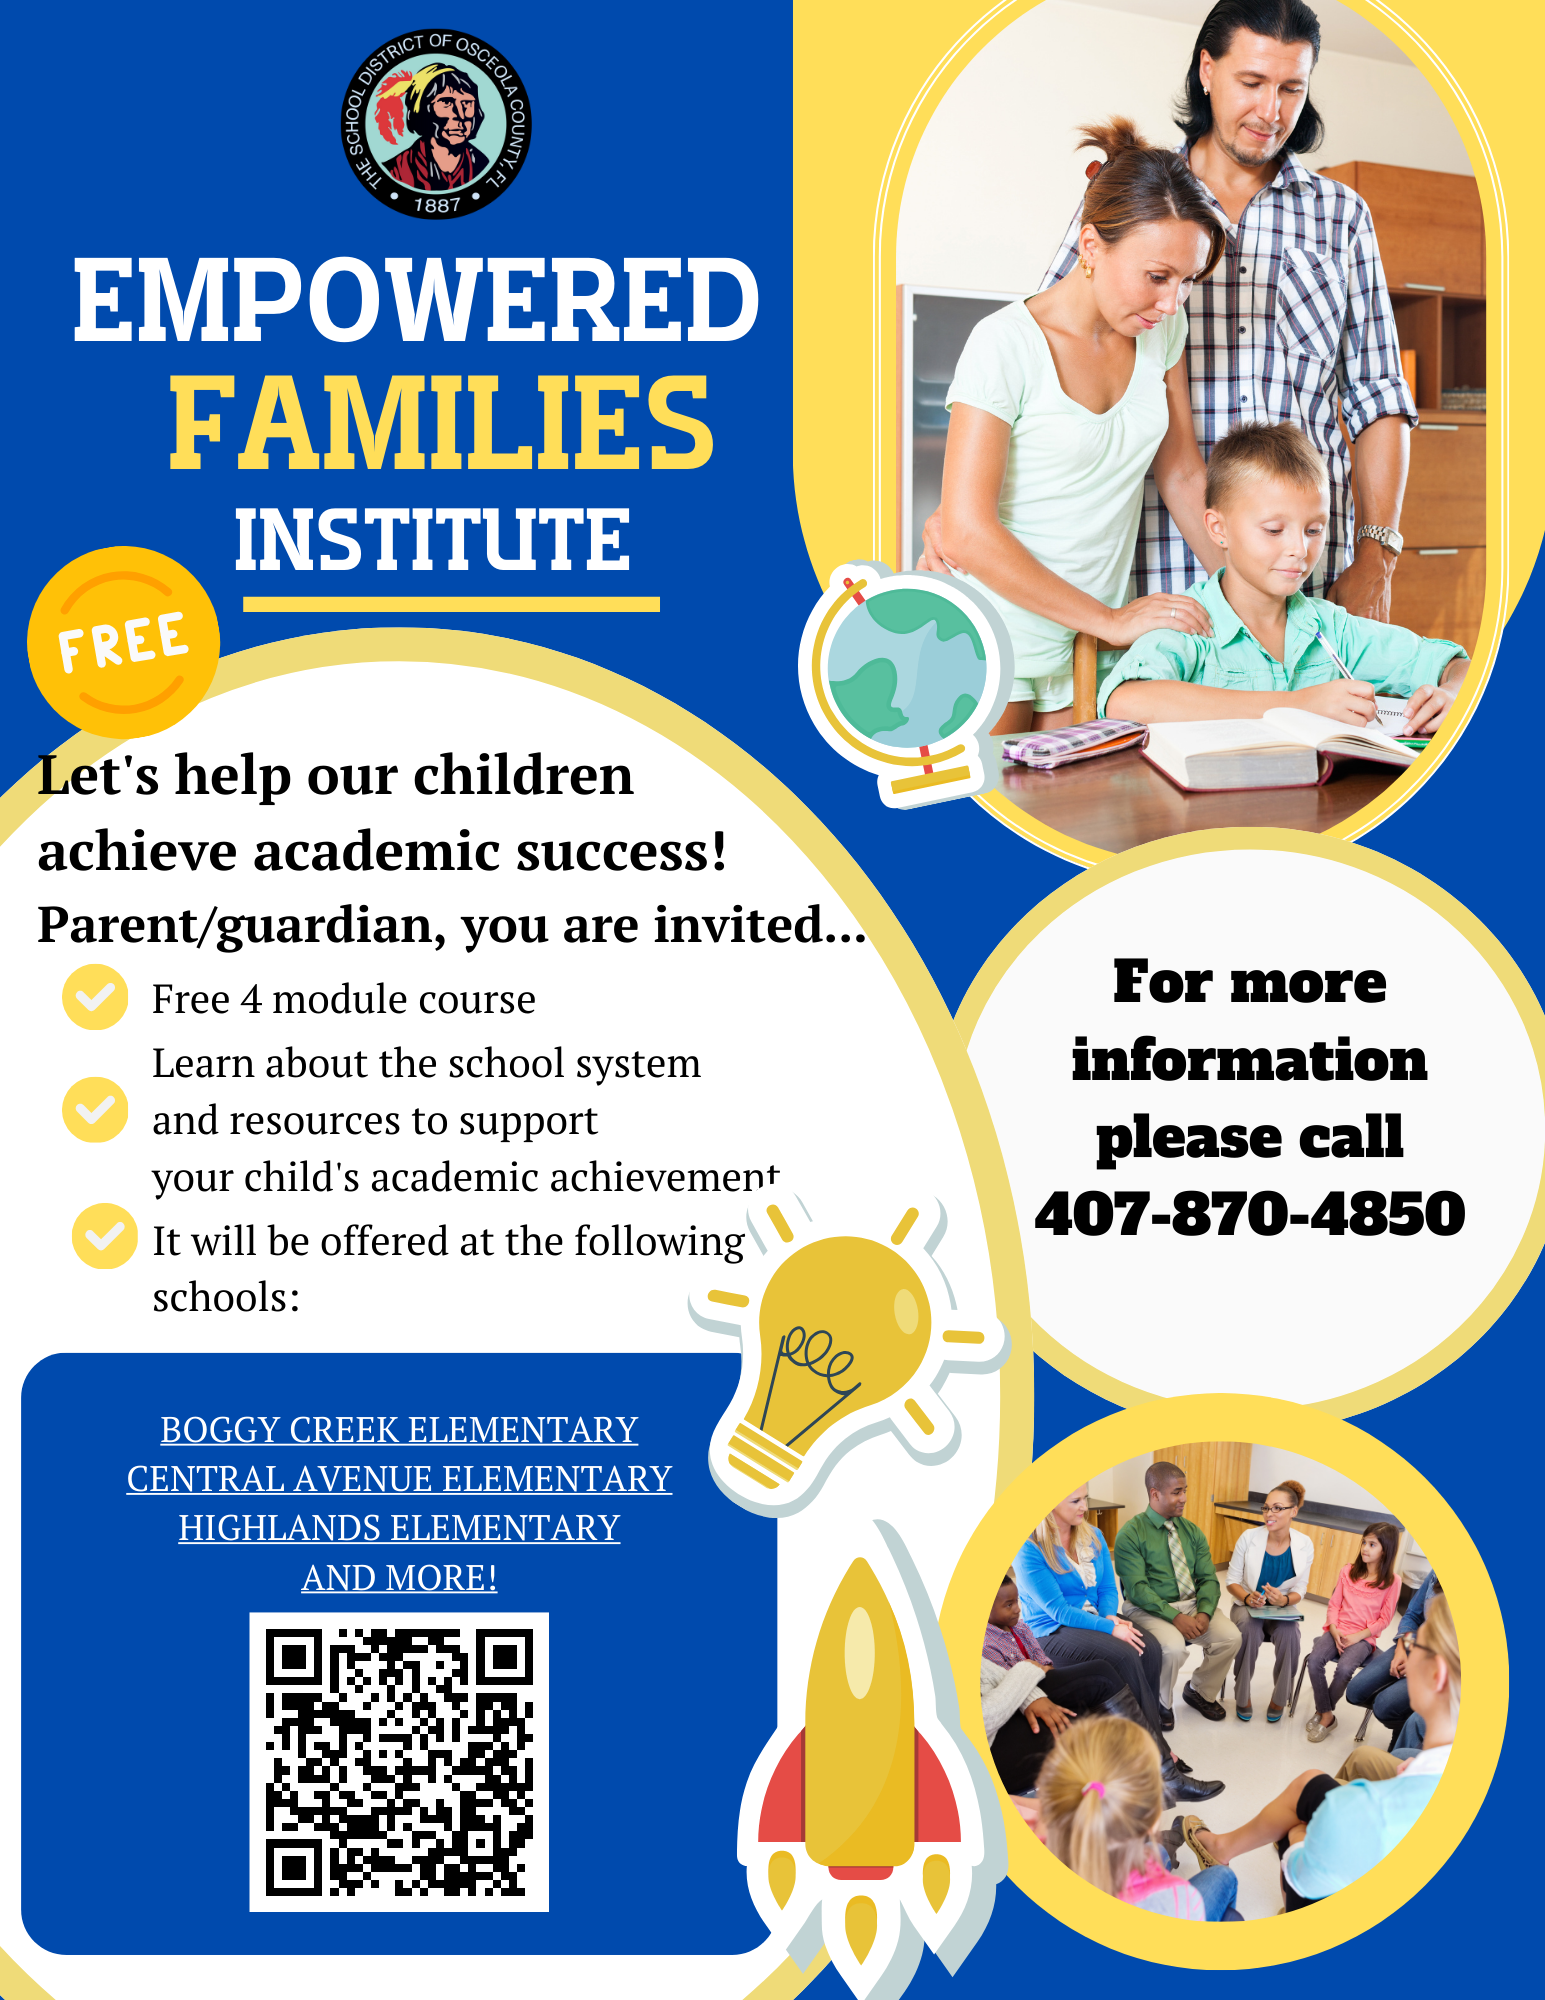 EEmpowered Families Institute2023/Instituto Para Familias Empoderadas 2023